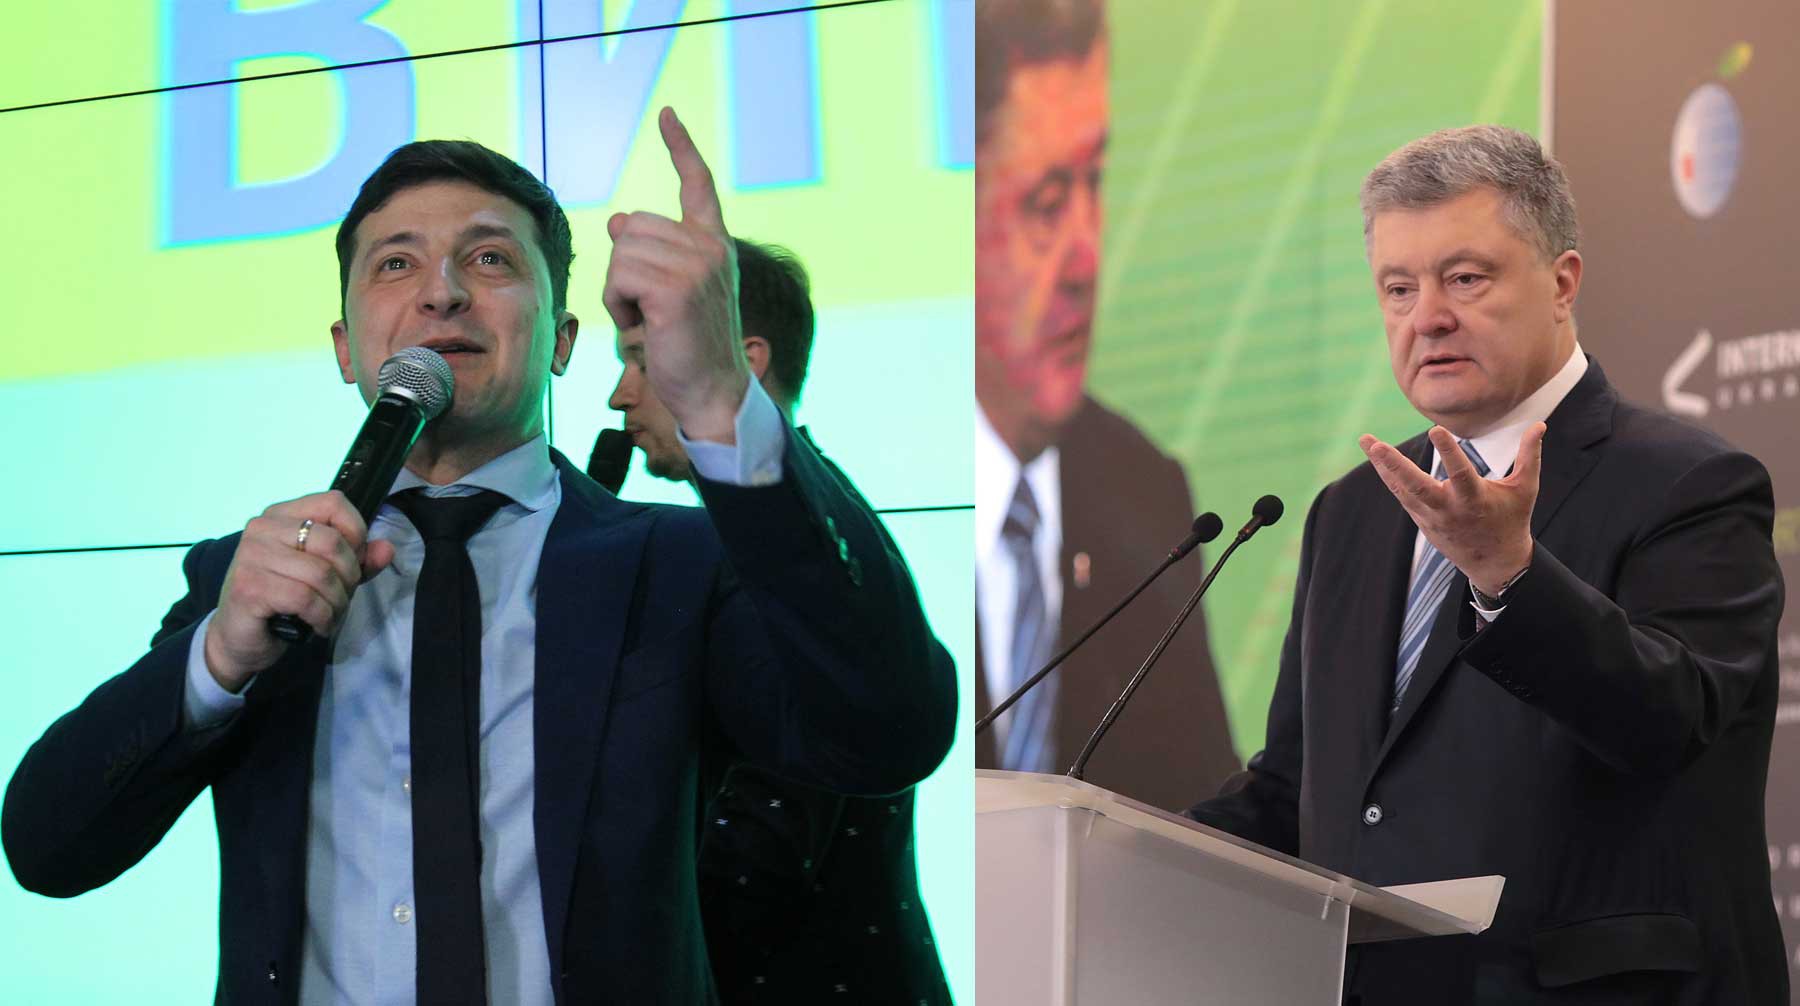 Dailystorm - Телемост Порошенко и Зеленского отменили из-за бескомпромиссности кандидатов